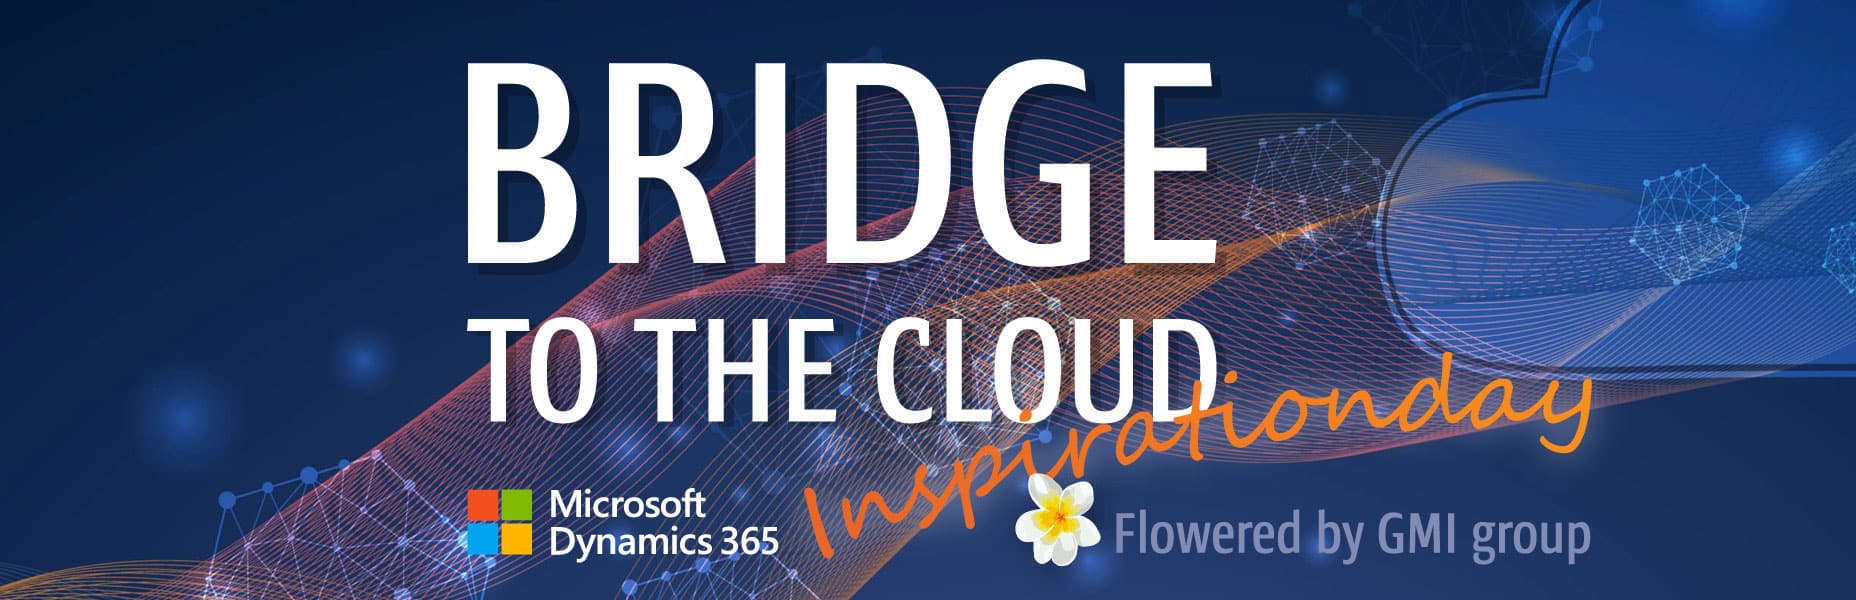 Samen bruggen bouwen met Microsoft op ‘Bridge To The Cloud’